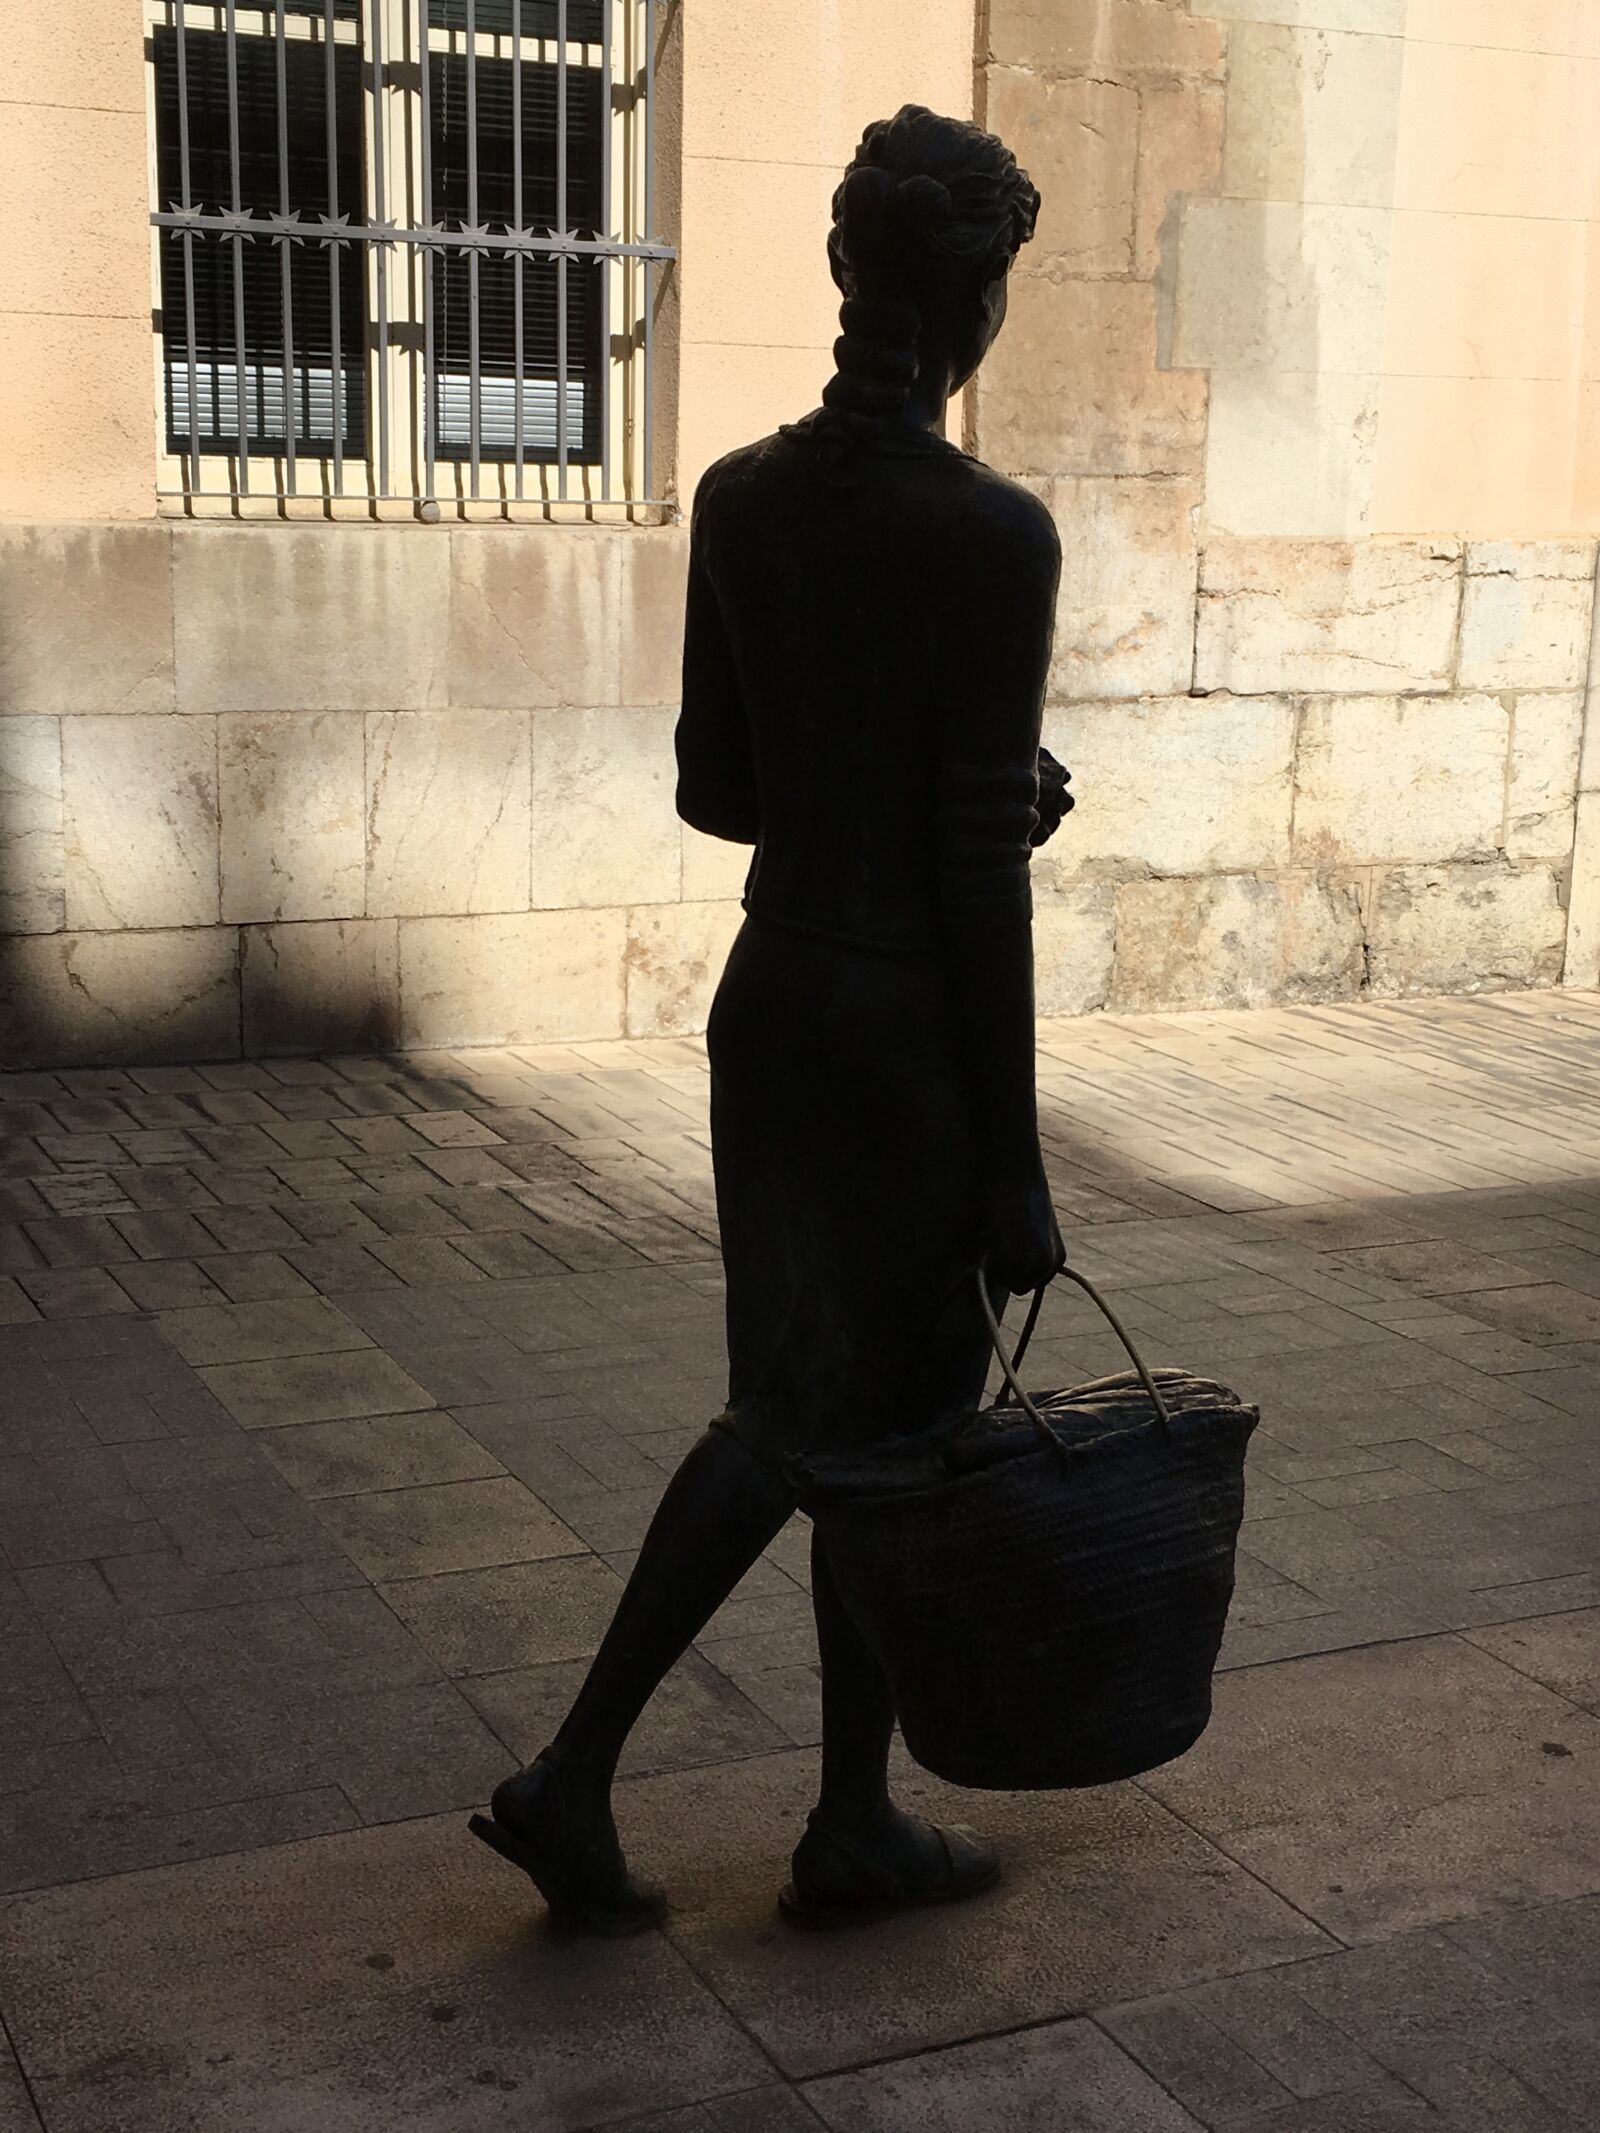 Apple iPad Pro sample photo. Sculpture, statue, women photography